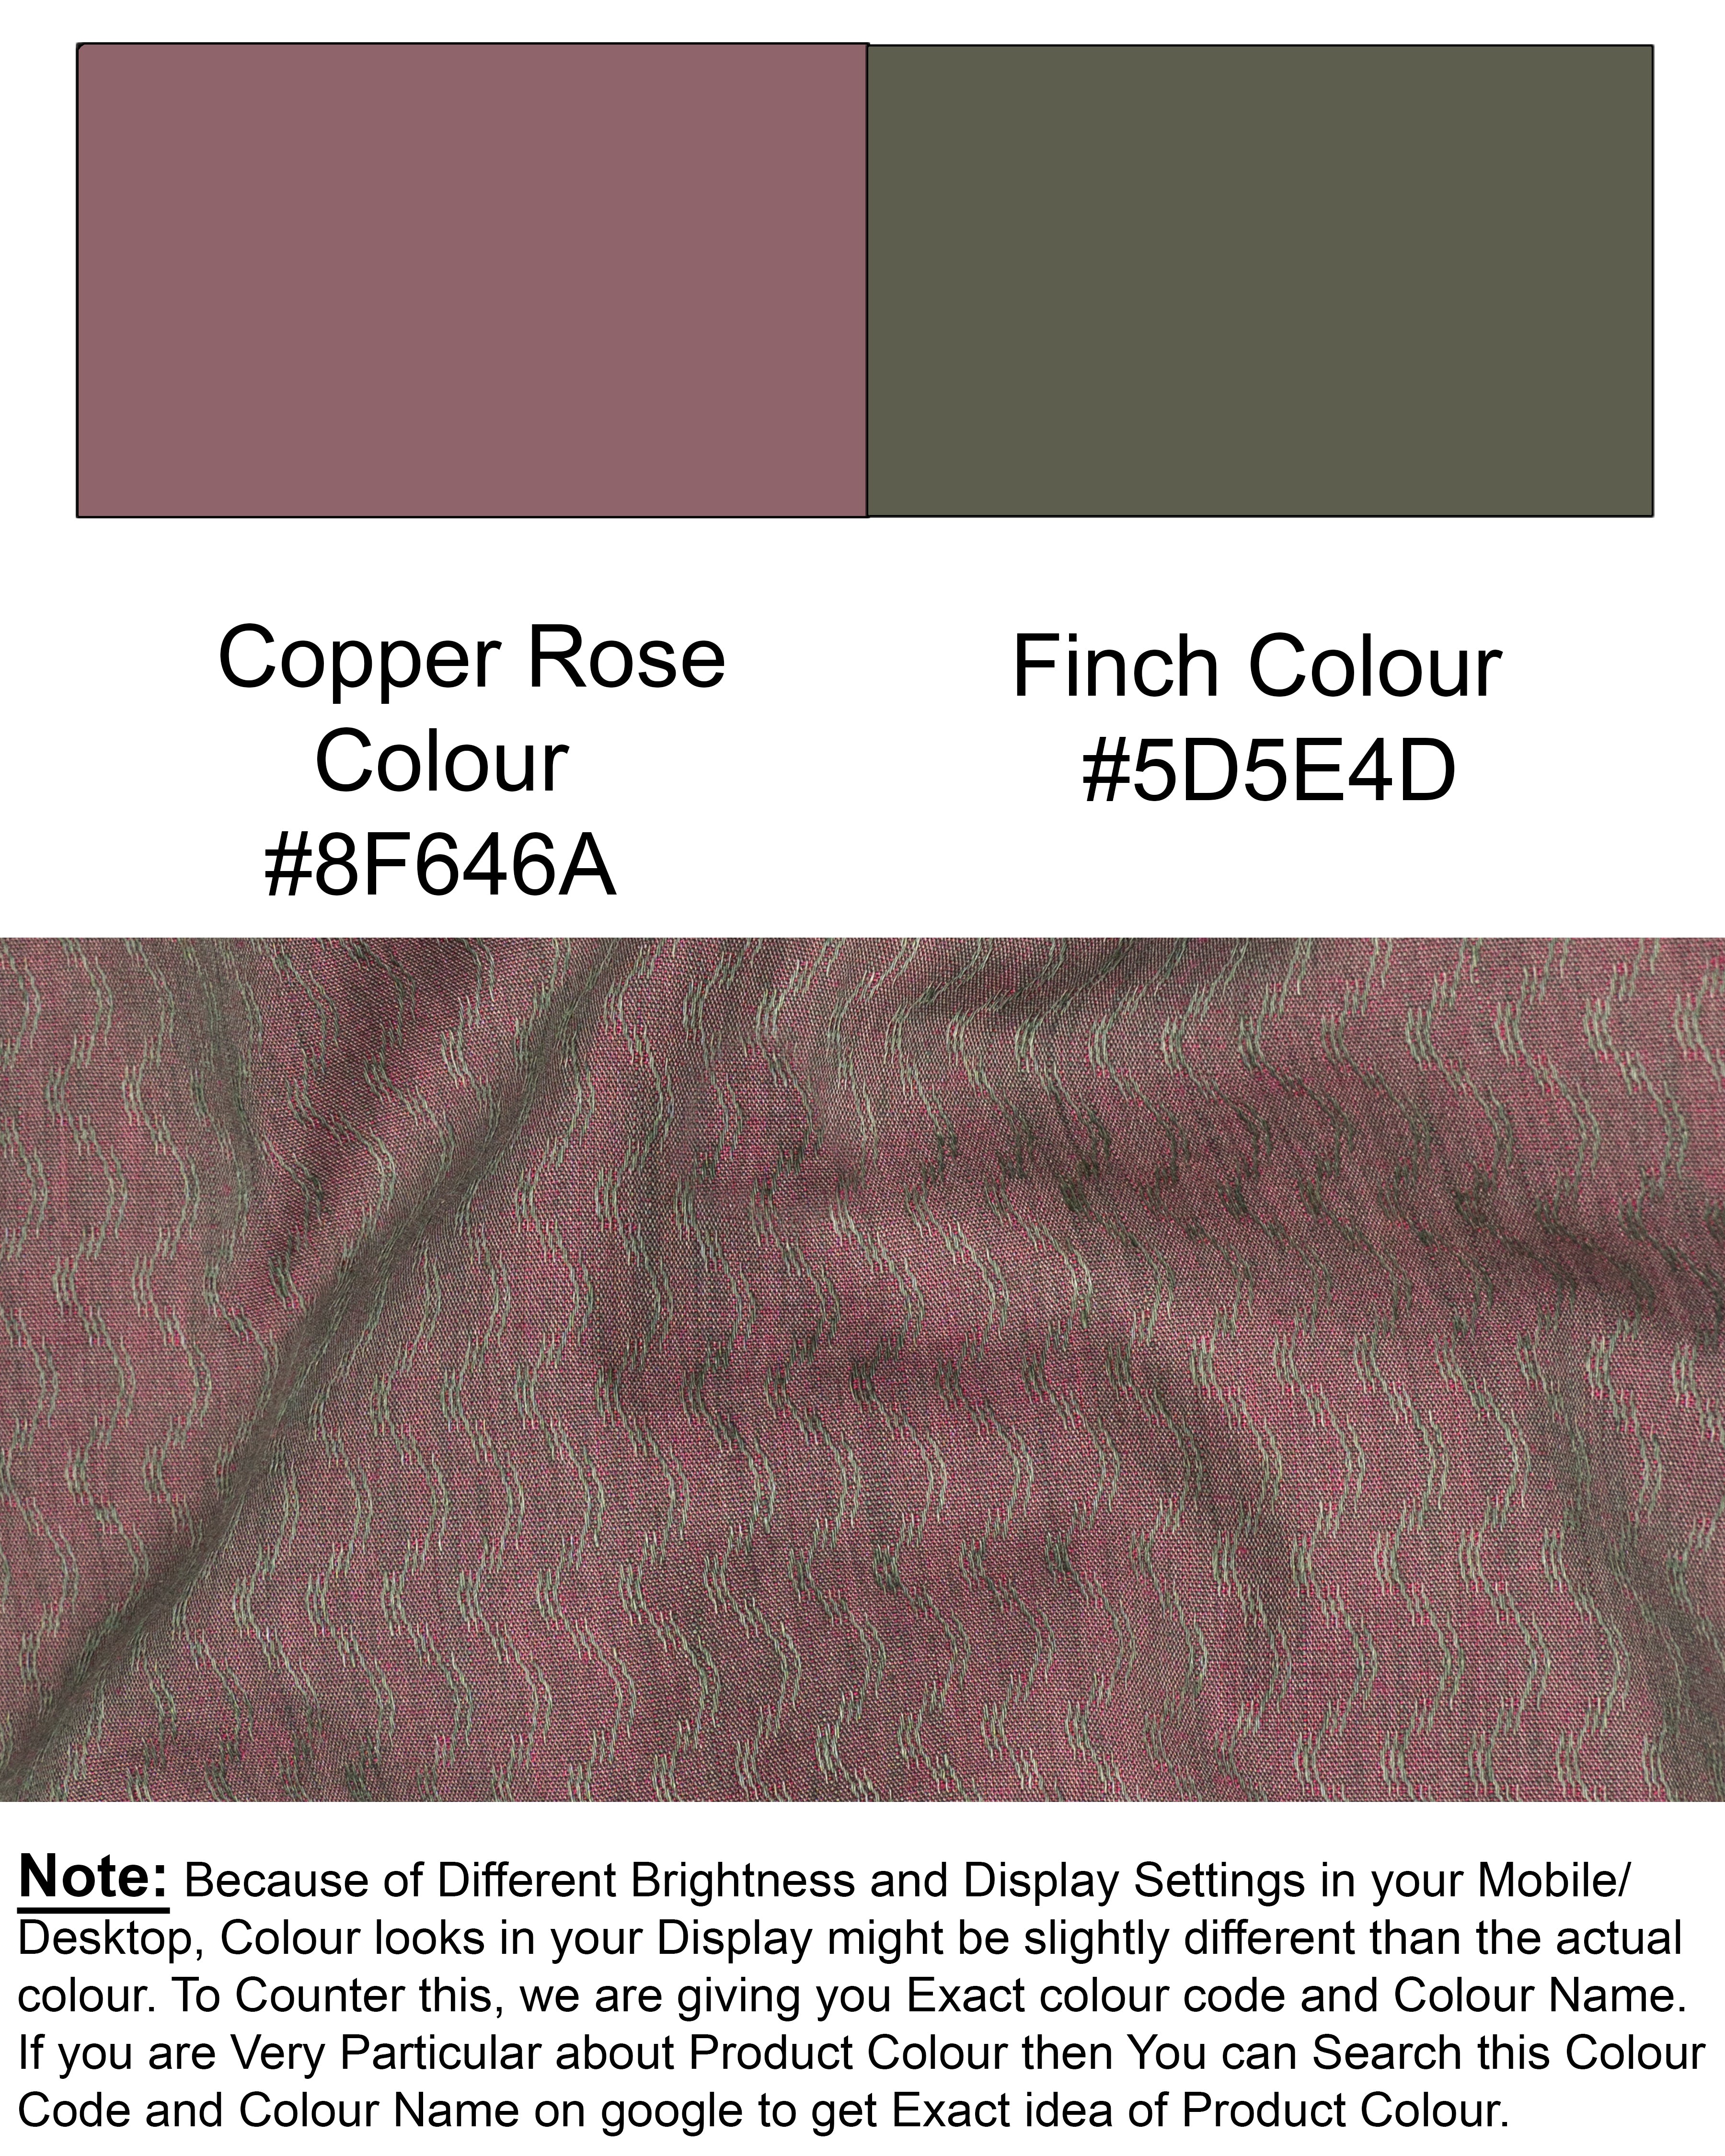 Copper Rose and Finch Green Two Tone Jacquard Premium Giza Cotton Shirt 6564-CA-38,6564-CA-38,6564-CA-39,6564-CA-39,6564-CA-40,6564-CA-40,6564-CA-42,6564-CA-42,6564-CA-44,6564-CA-44,6564-CA-46,6564-CA-46,6564-CA-48,6564-CA-48,6564-CA-50,6564-CA-50,6564-CA-52,6564-CA-52